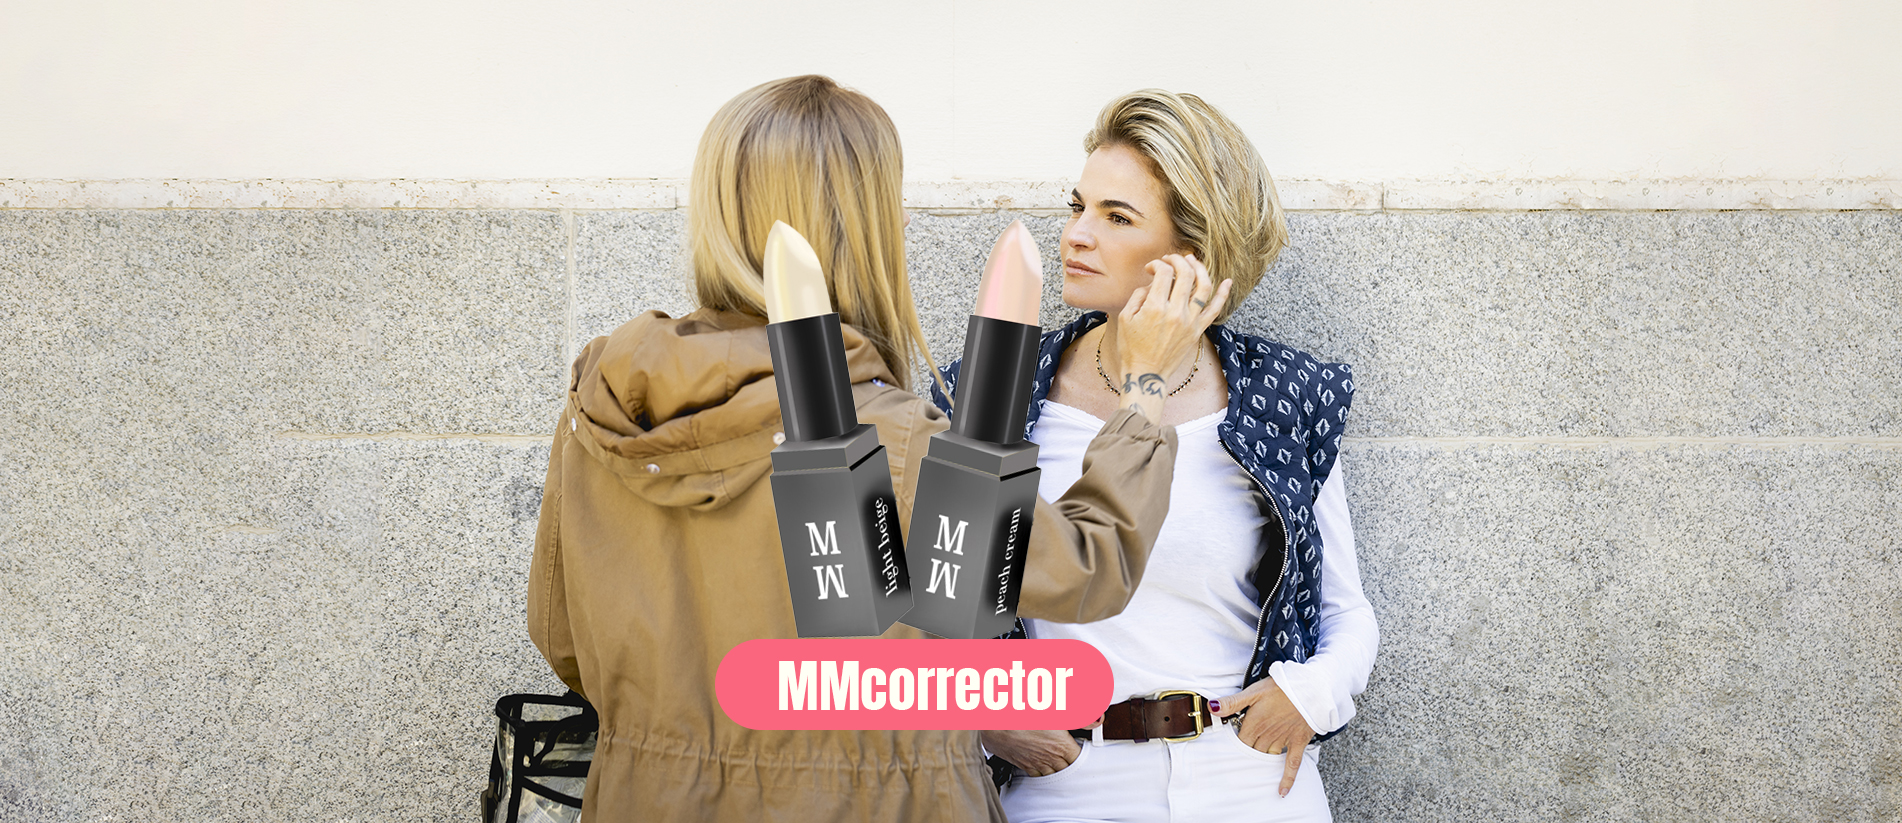 mmcorrector